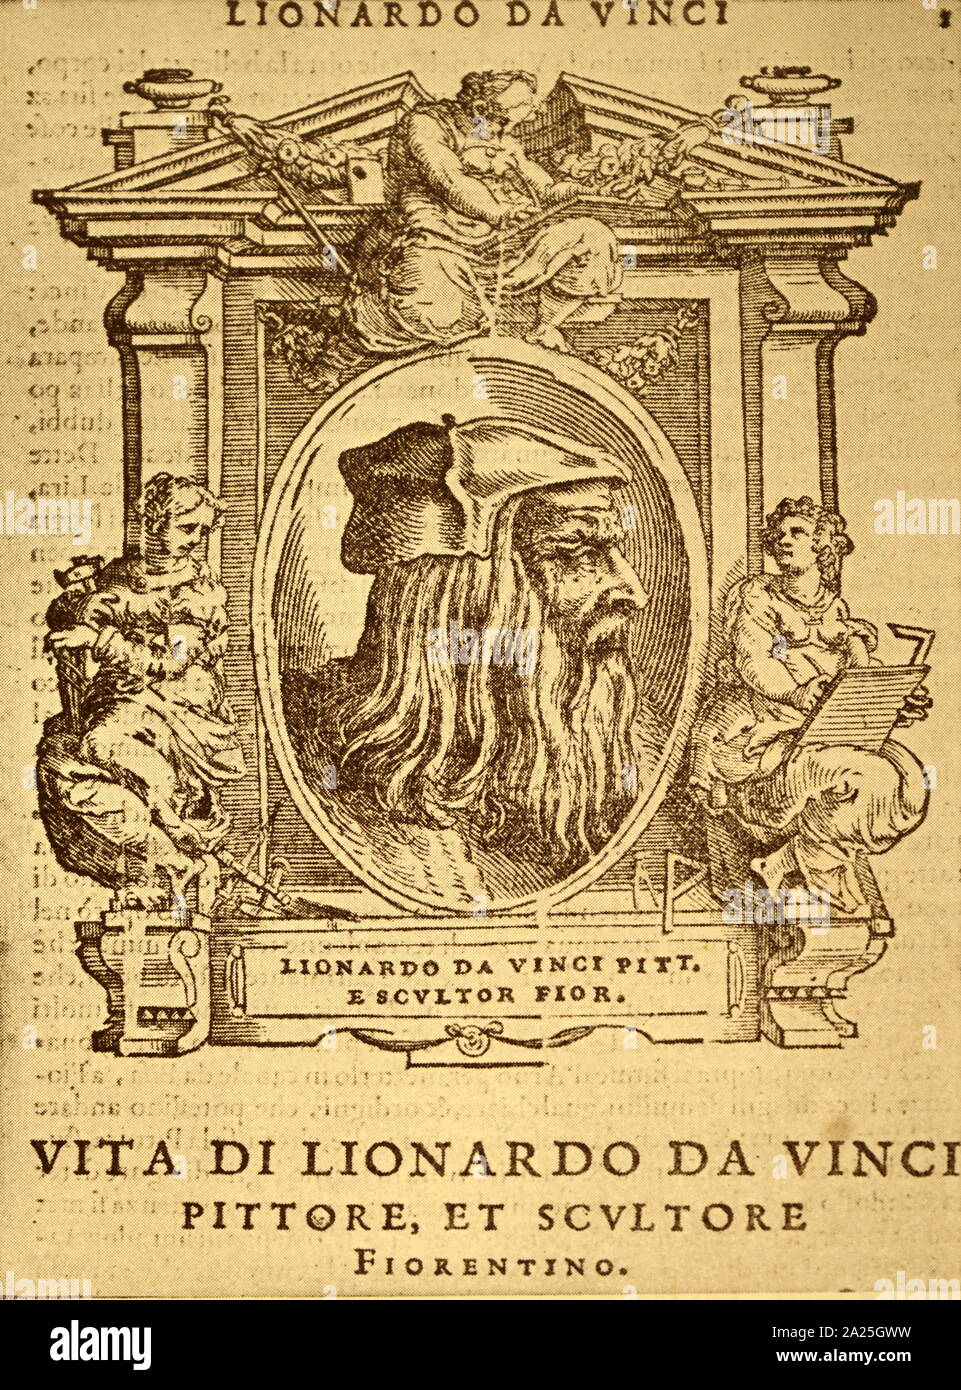 Xilografia ritratto di Leonardo da Vinci. Leonardo di ser Piero da Vinci (1452-1519) un polymath italiana del Rinascimento. Foto Stock